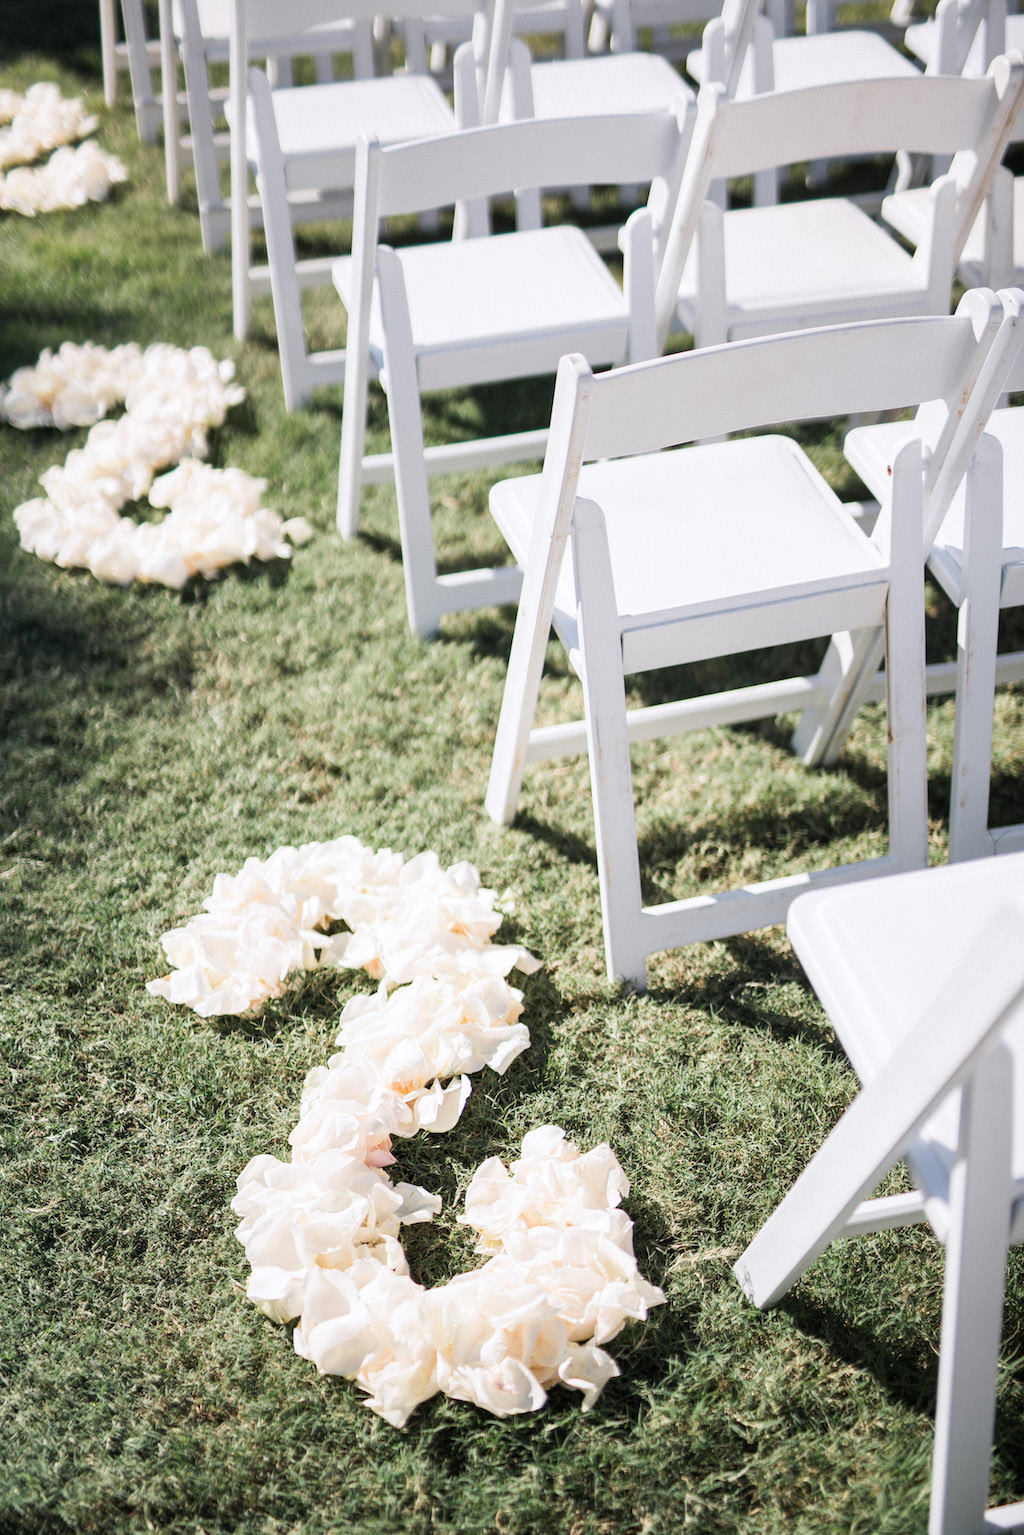 Clean, Garden Modern Wedding Decor, White Floral Floor Arrangement, in Ceremony Aisle